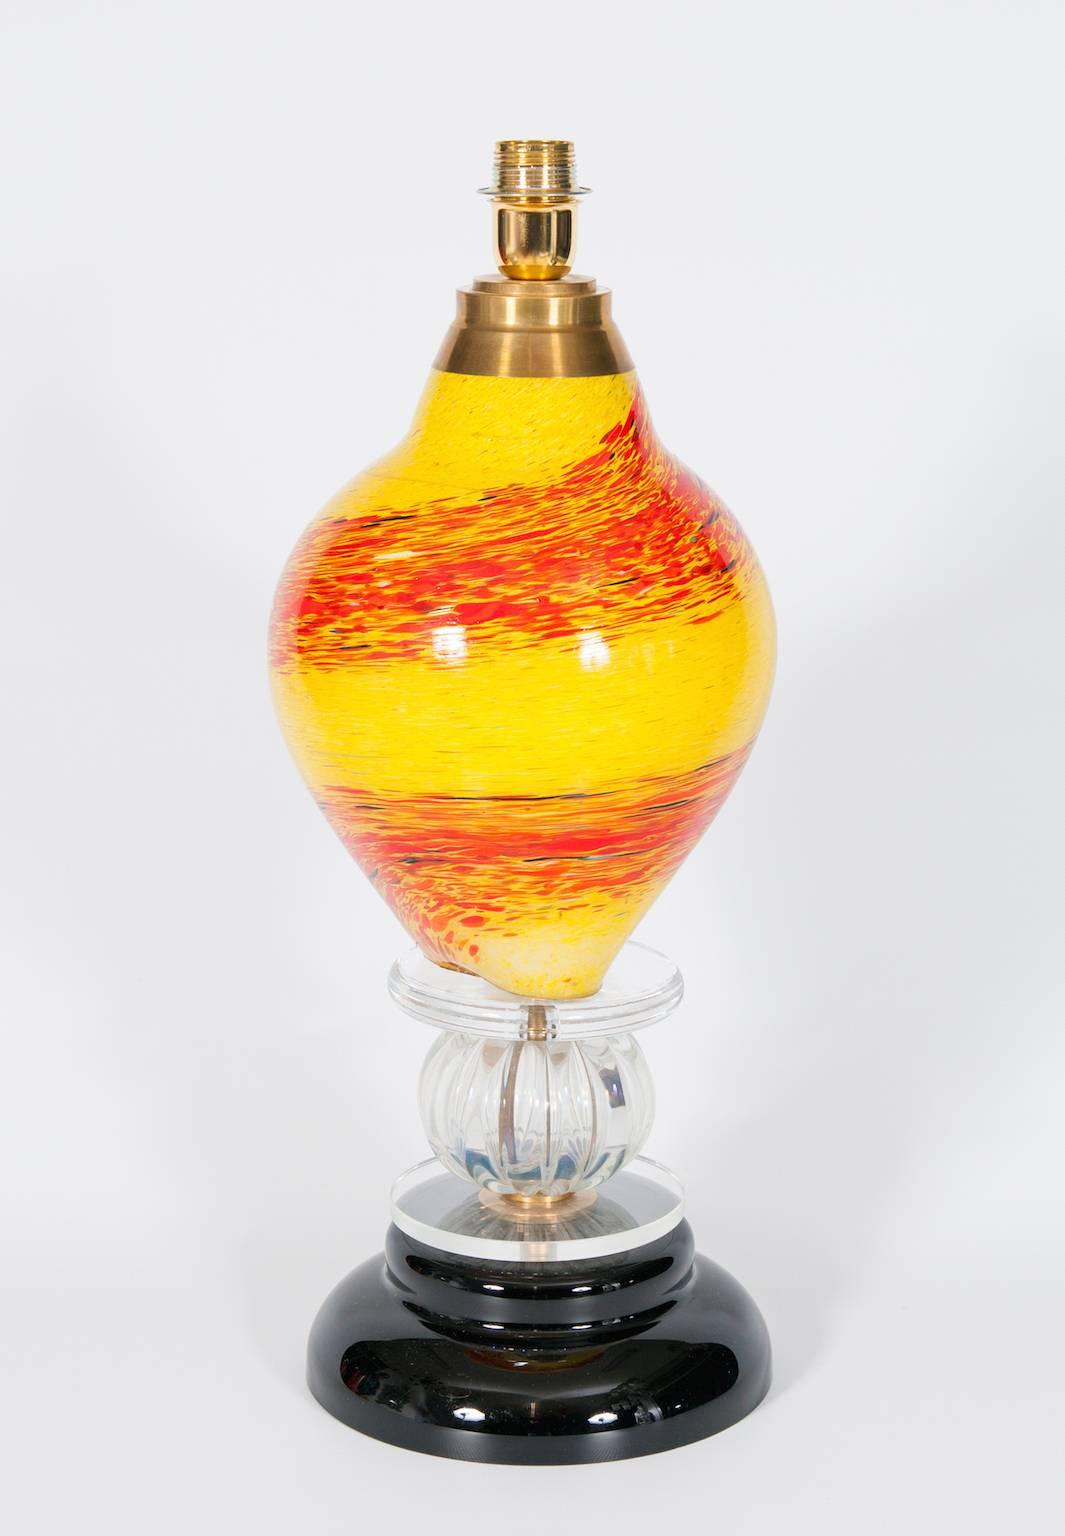 Italienische venezianische Muranoglas-Tischlampe mit einem schwarzen Sockel durch oben zwei Scheiben mit in der Mitte eine Kugel, und mit oben eine fantastische Schale in gelben und orange Farben. Die Tischlampe ist vollständig aus mundgeblasenem